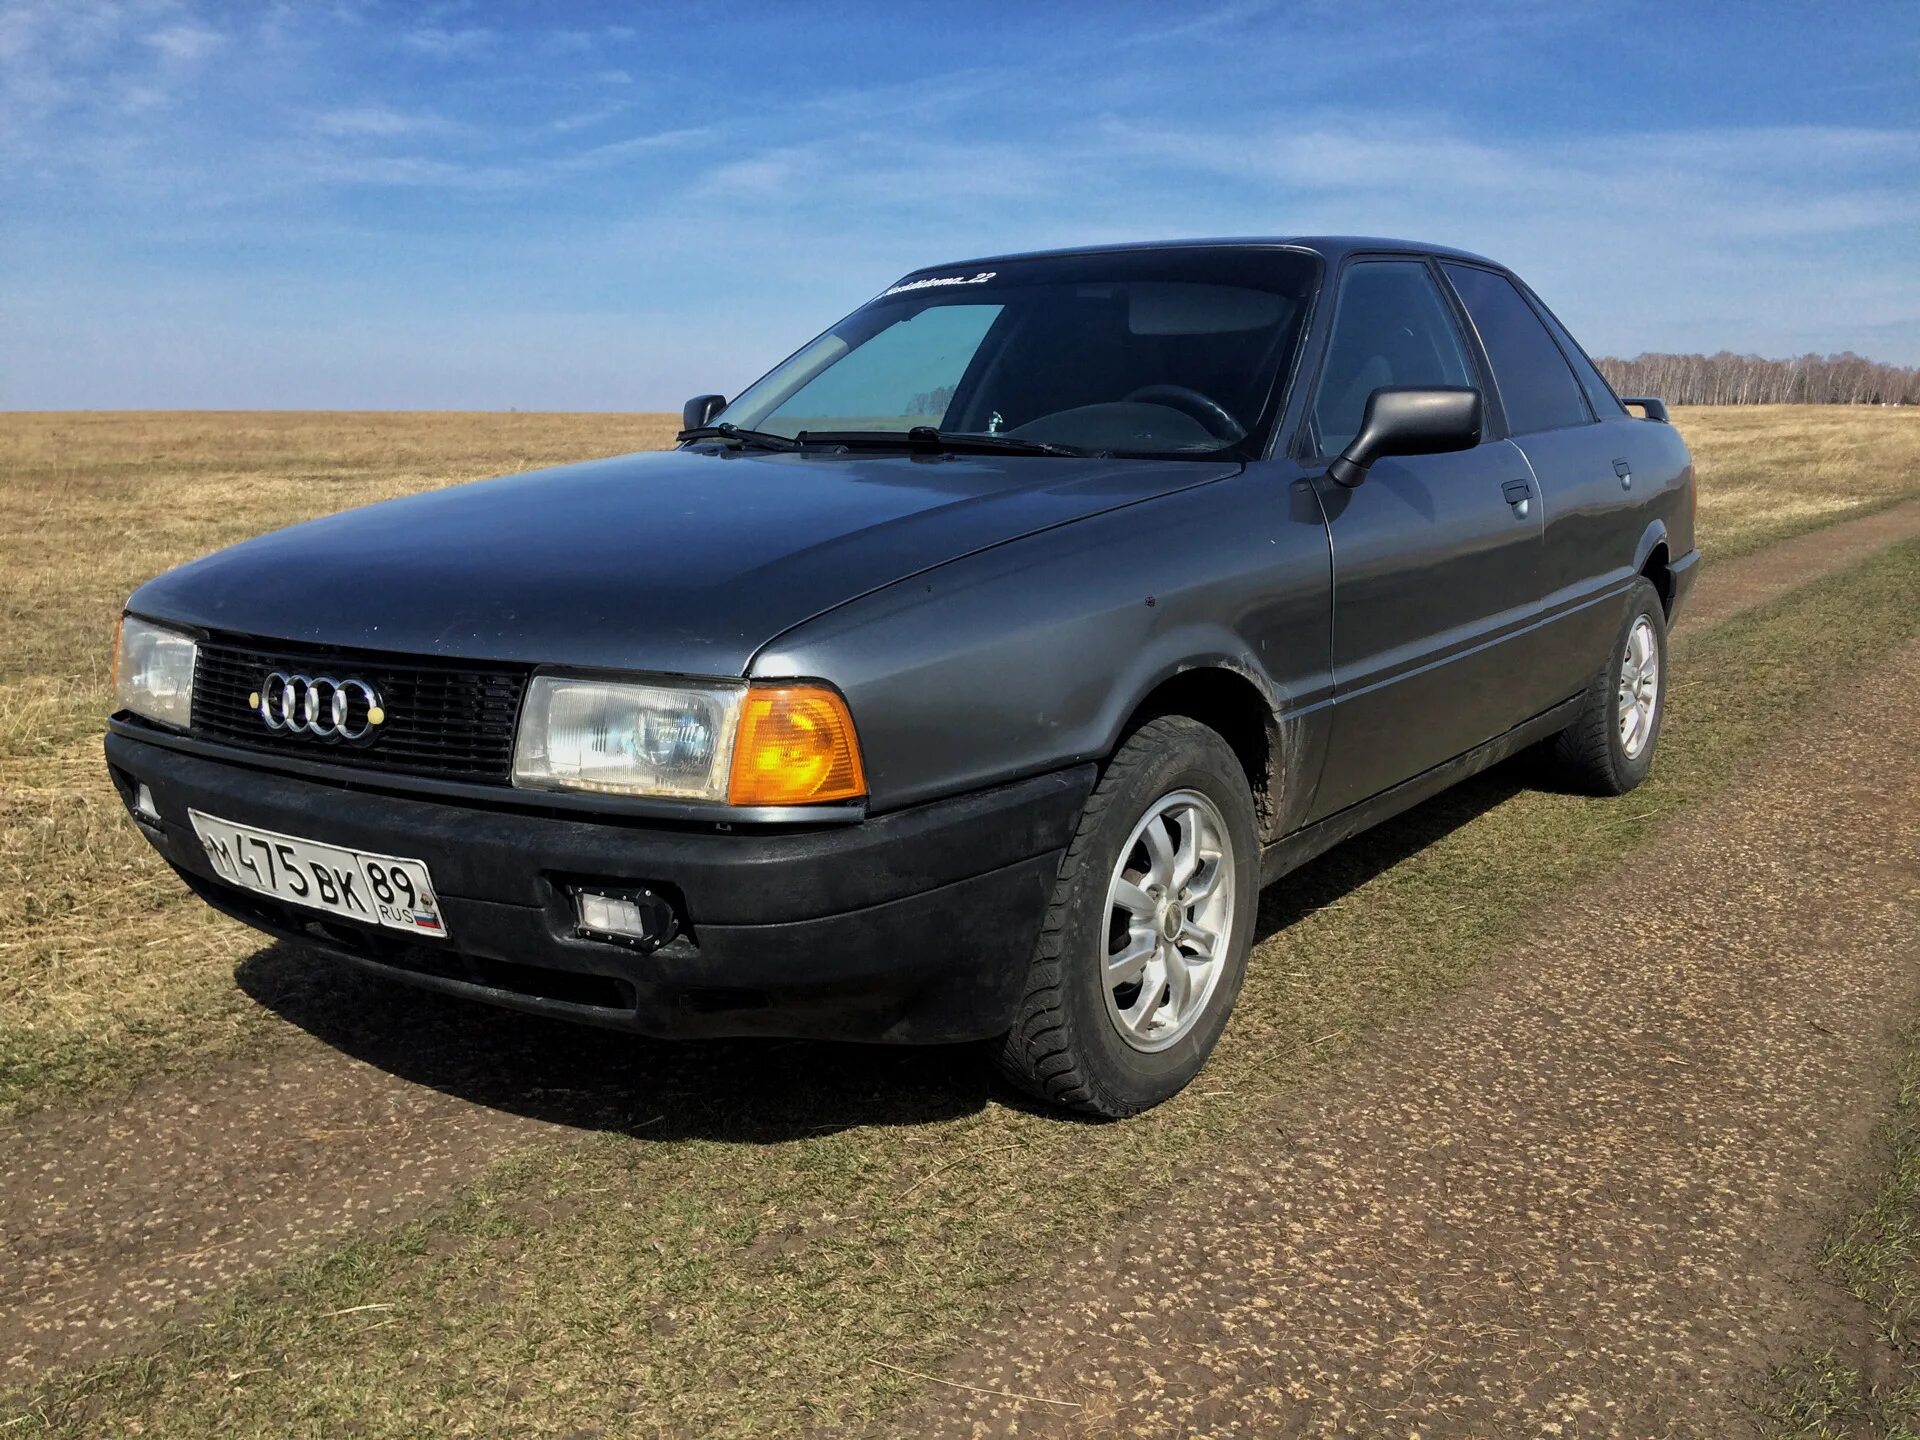 Ауди 80 1990. Audi 80 b3. Ауди 80 б3. Ауди 80 b3 1990.